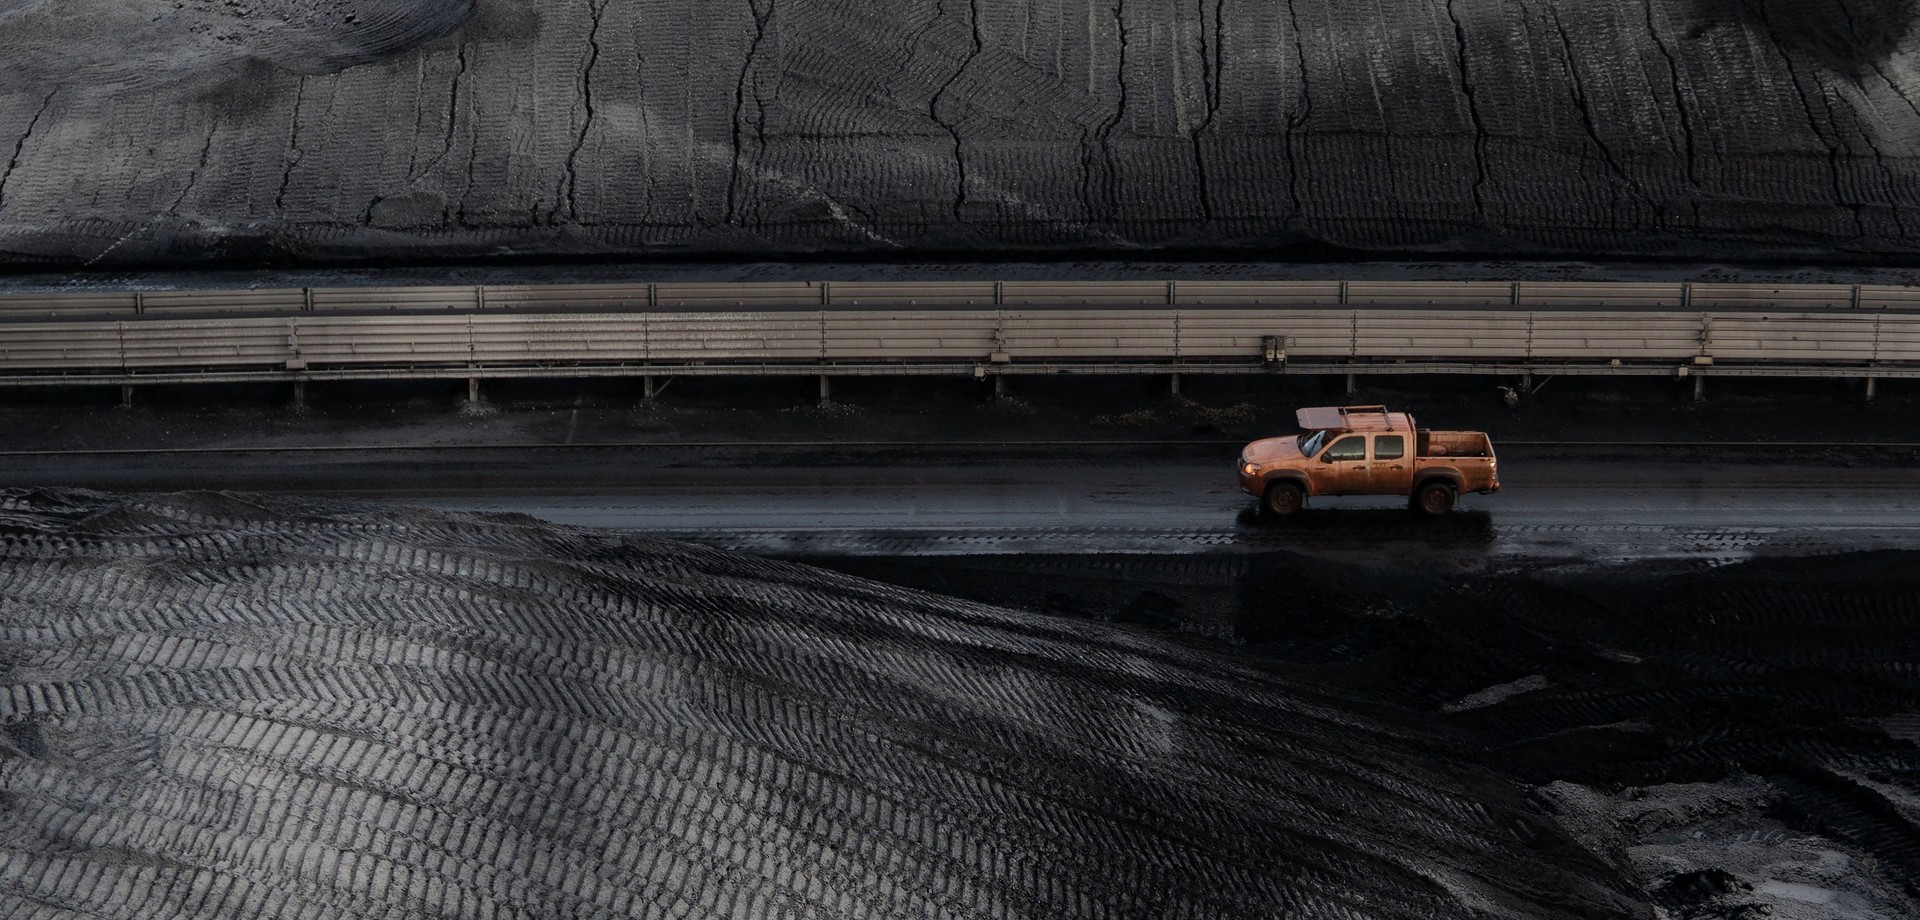 Khalil Döring spürt in seinen Fotografien dem Weg der Kohle nach. Die Zeche Nachtigall zeigt eine Auswahl seiner Bilder. Foto: Khalil Döring